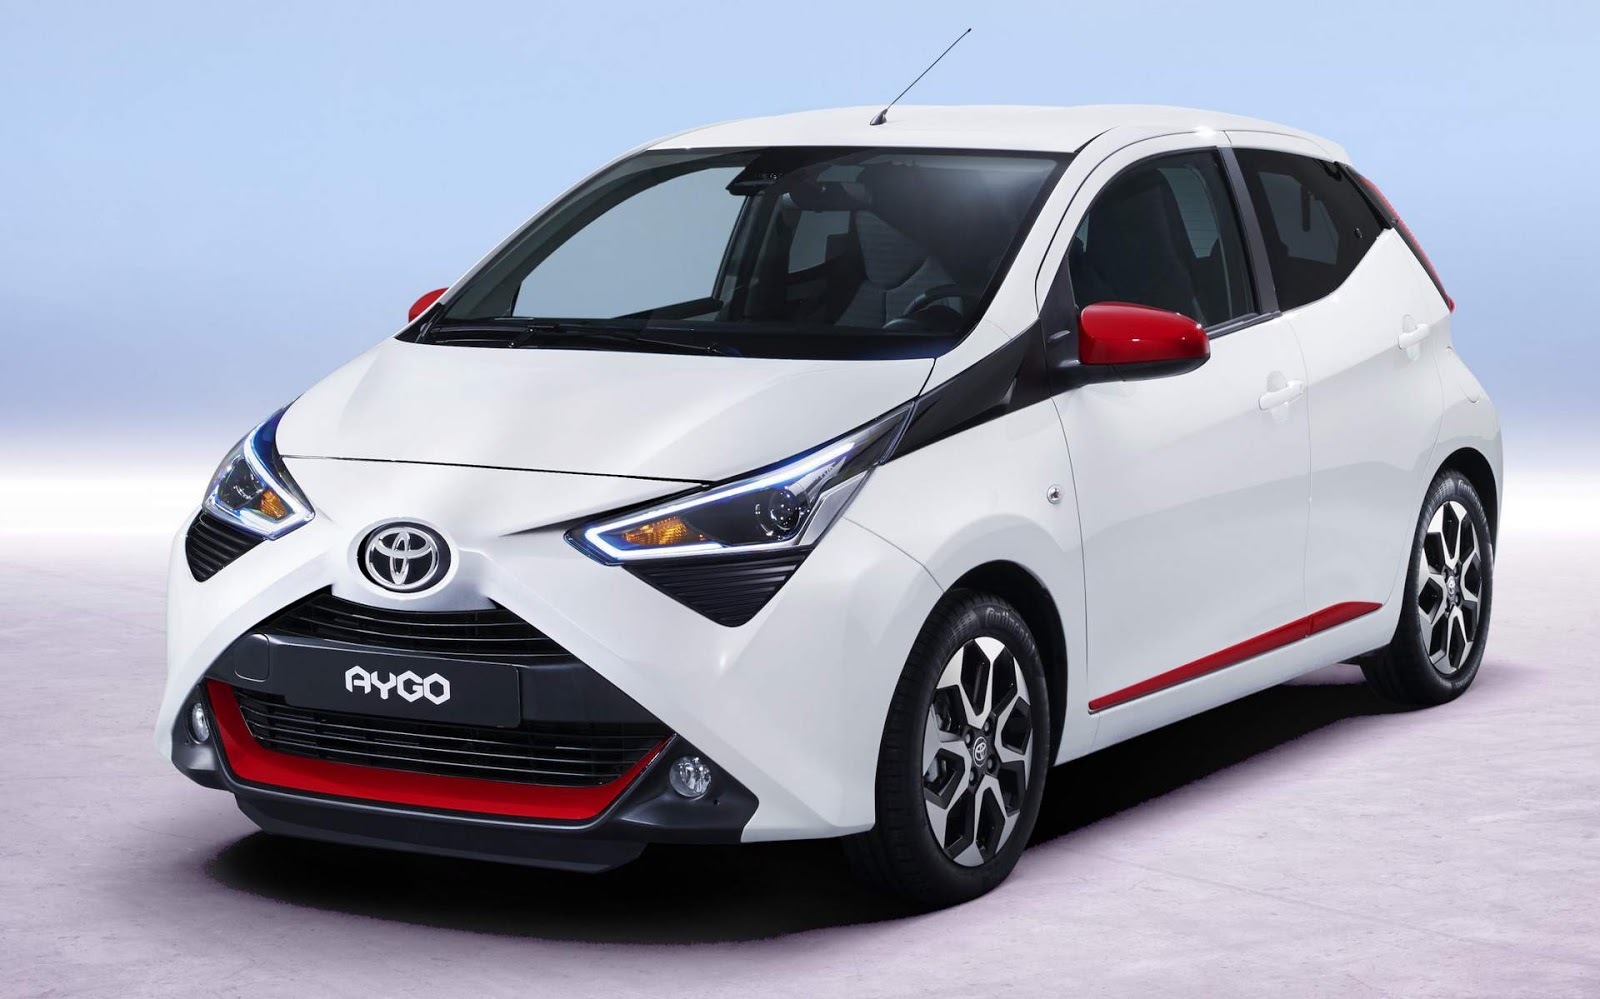 Toyota Aygo 2019, concorrente do Up!, chega com facelift